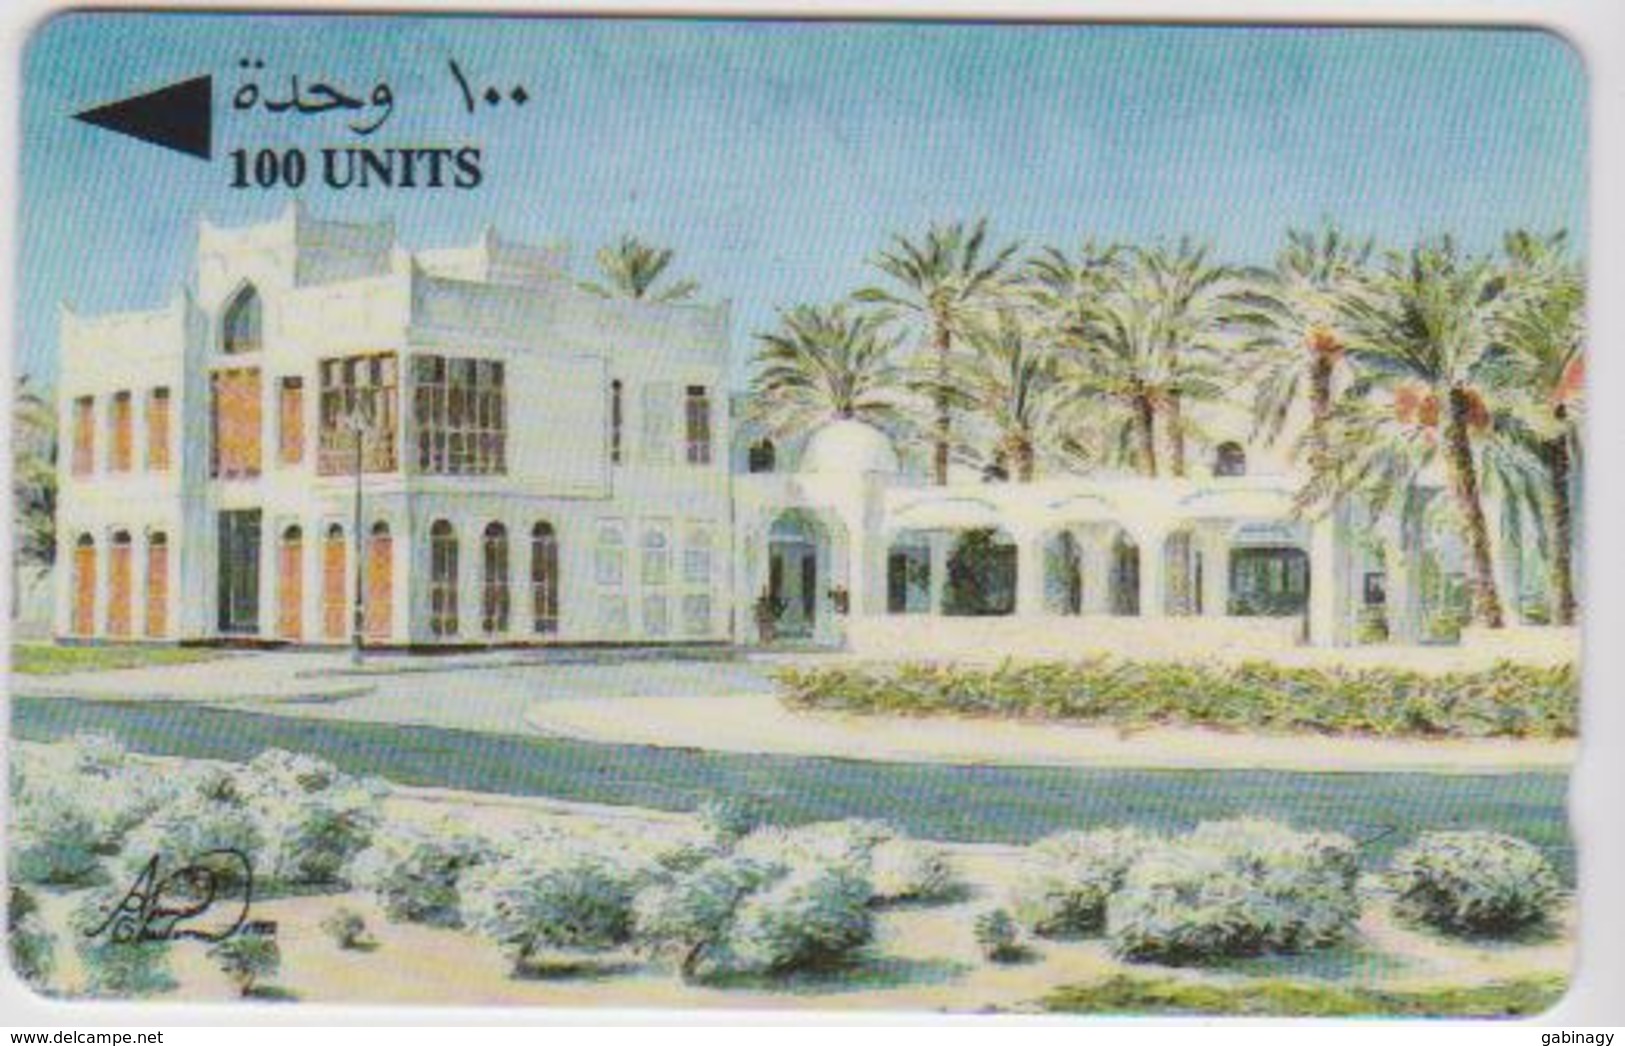 #09 - BAHRAIN-06 - 28BAHD - 100 UNITS - Bahrein